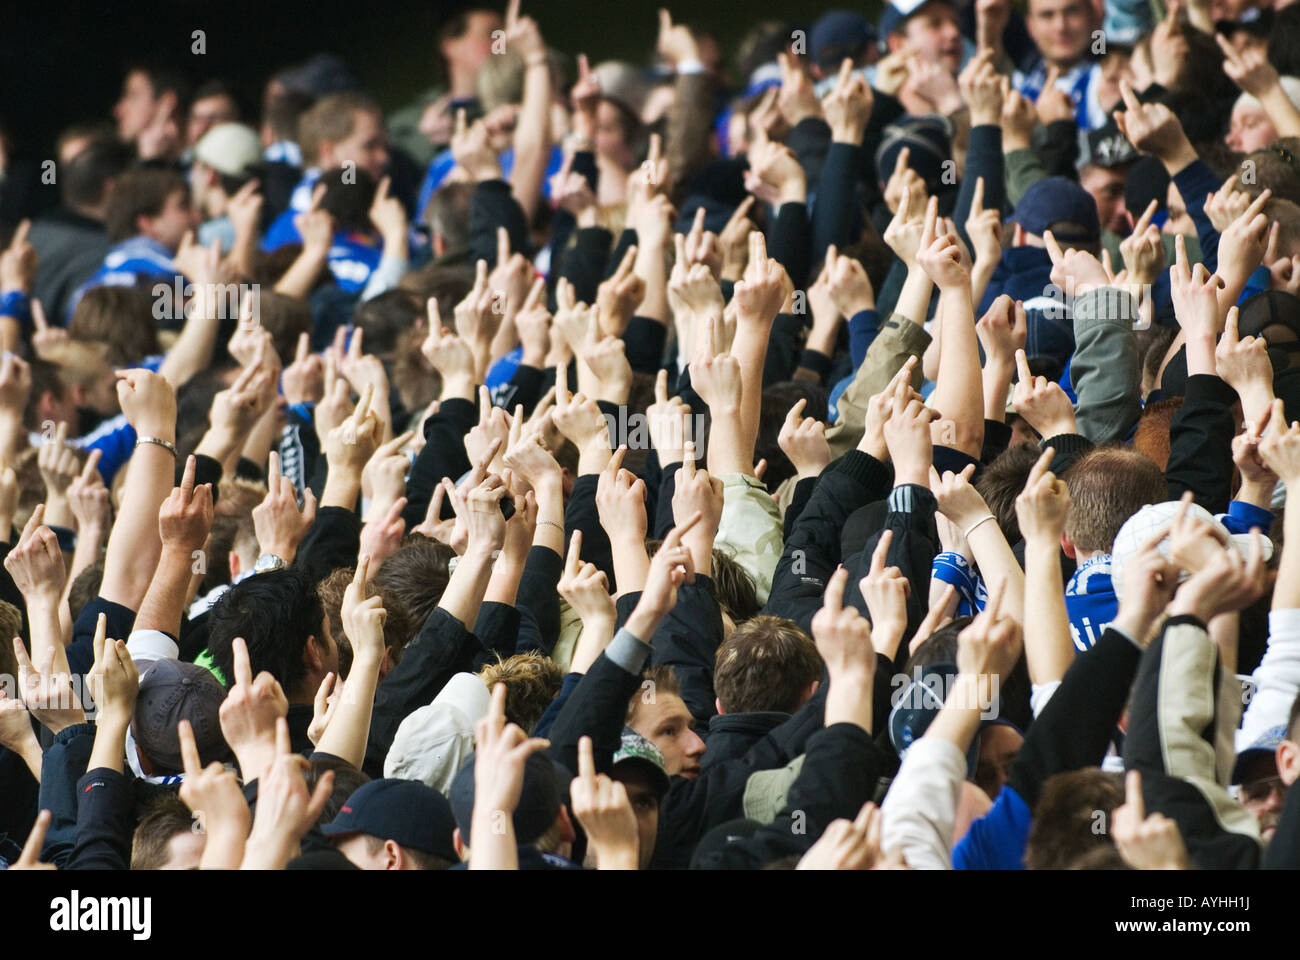 Los aficionados al fútbol de Schalke 04 muestran sus dedos outstreched al equipo contrario Foto de stock